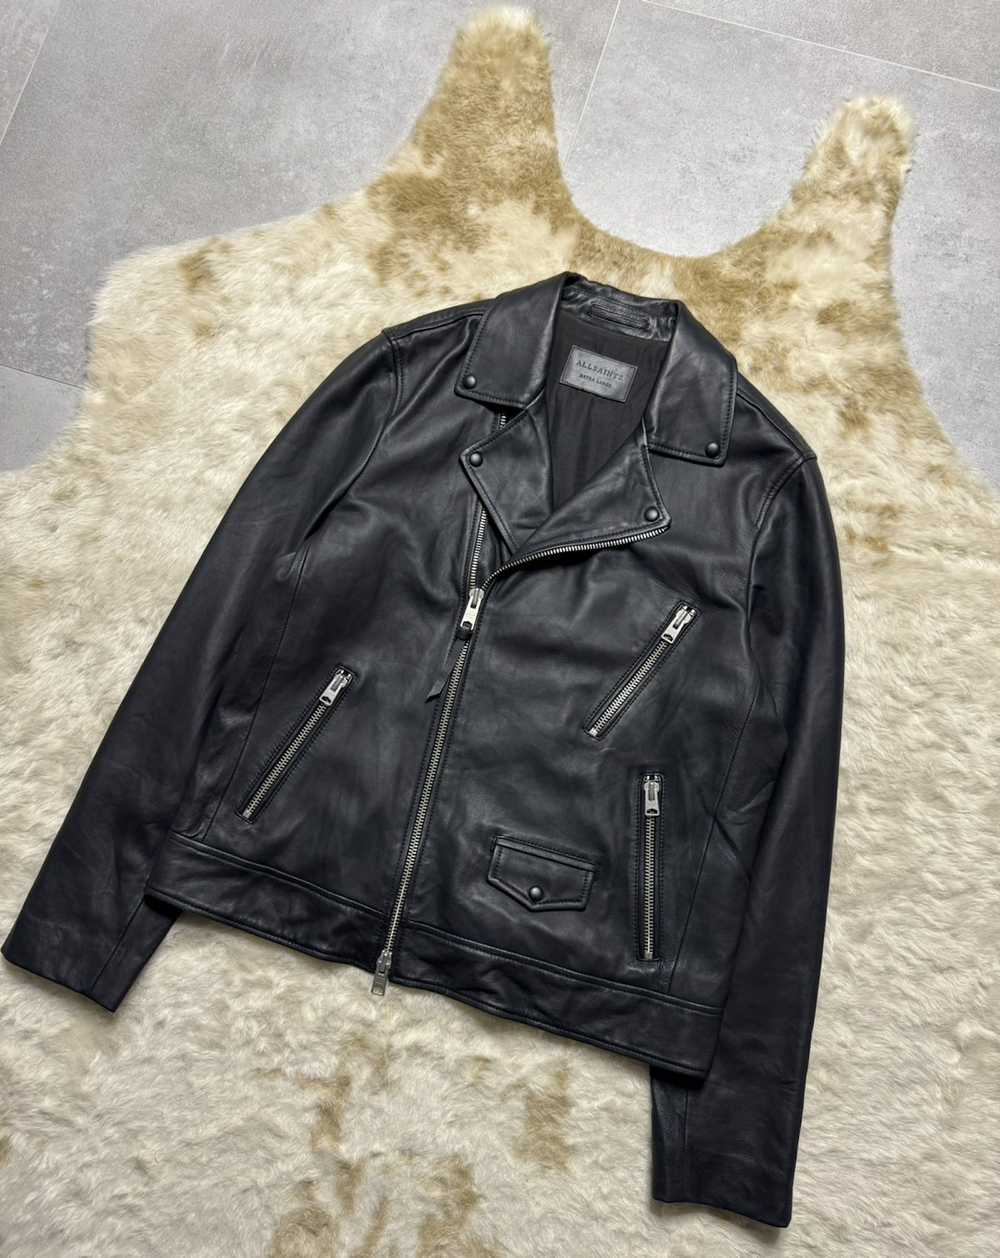 Allsaints "All Saints Leather Biker Jacket" - image 2